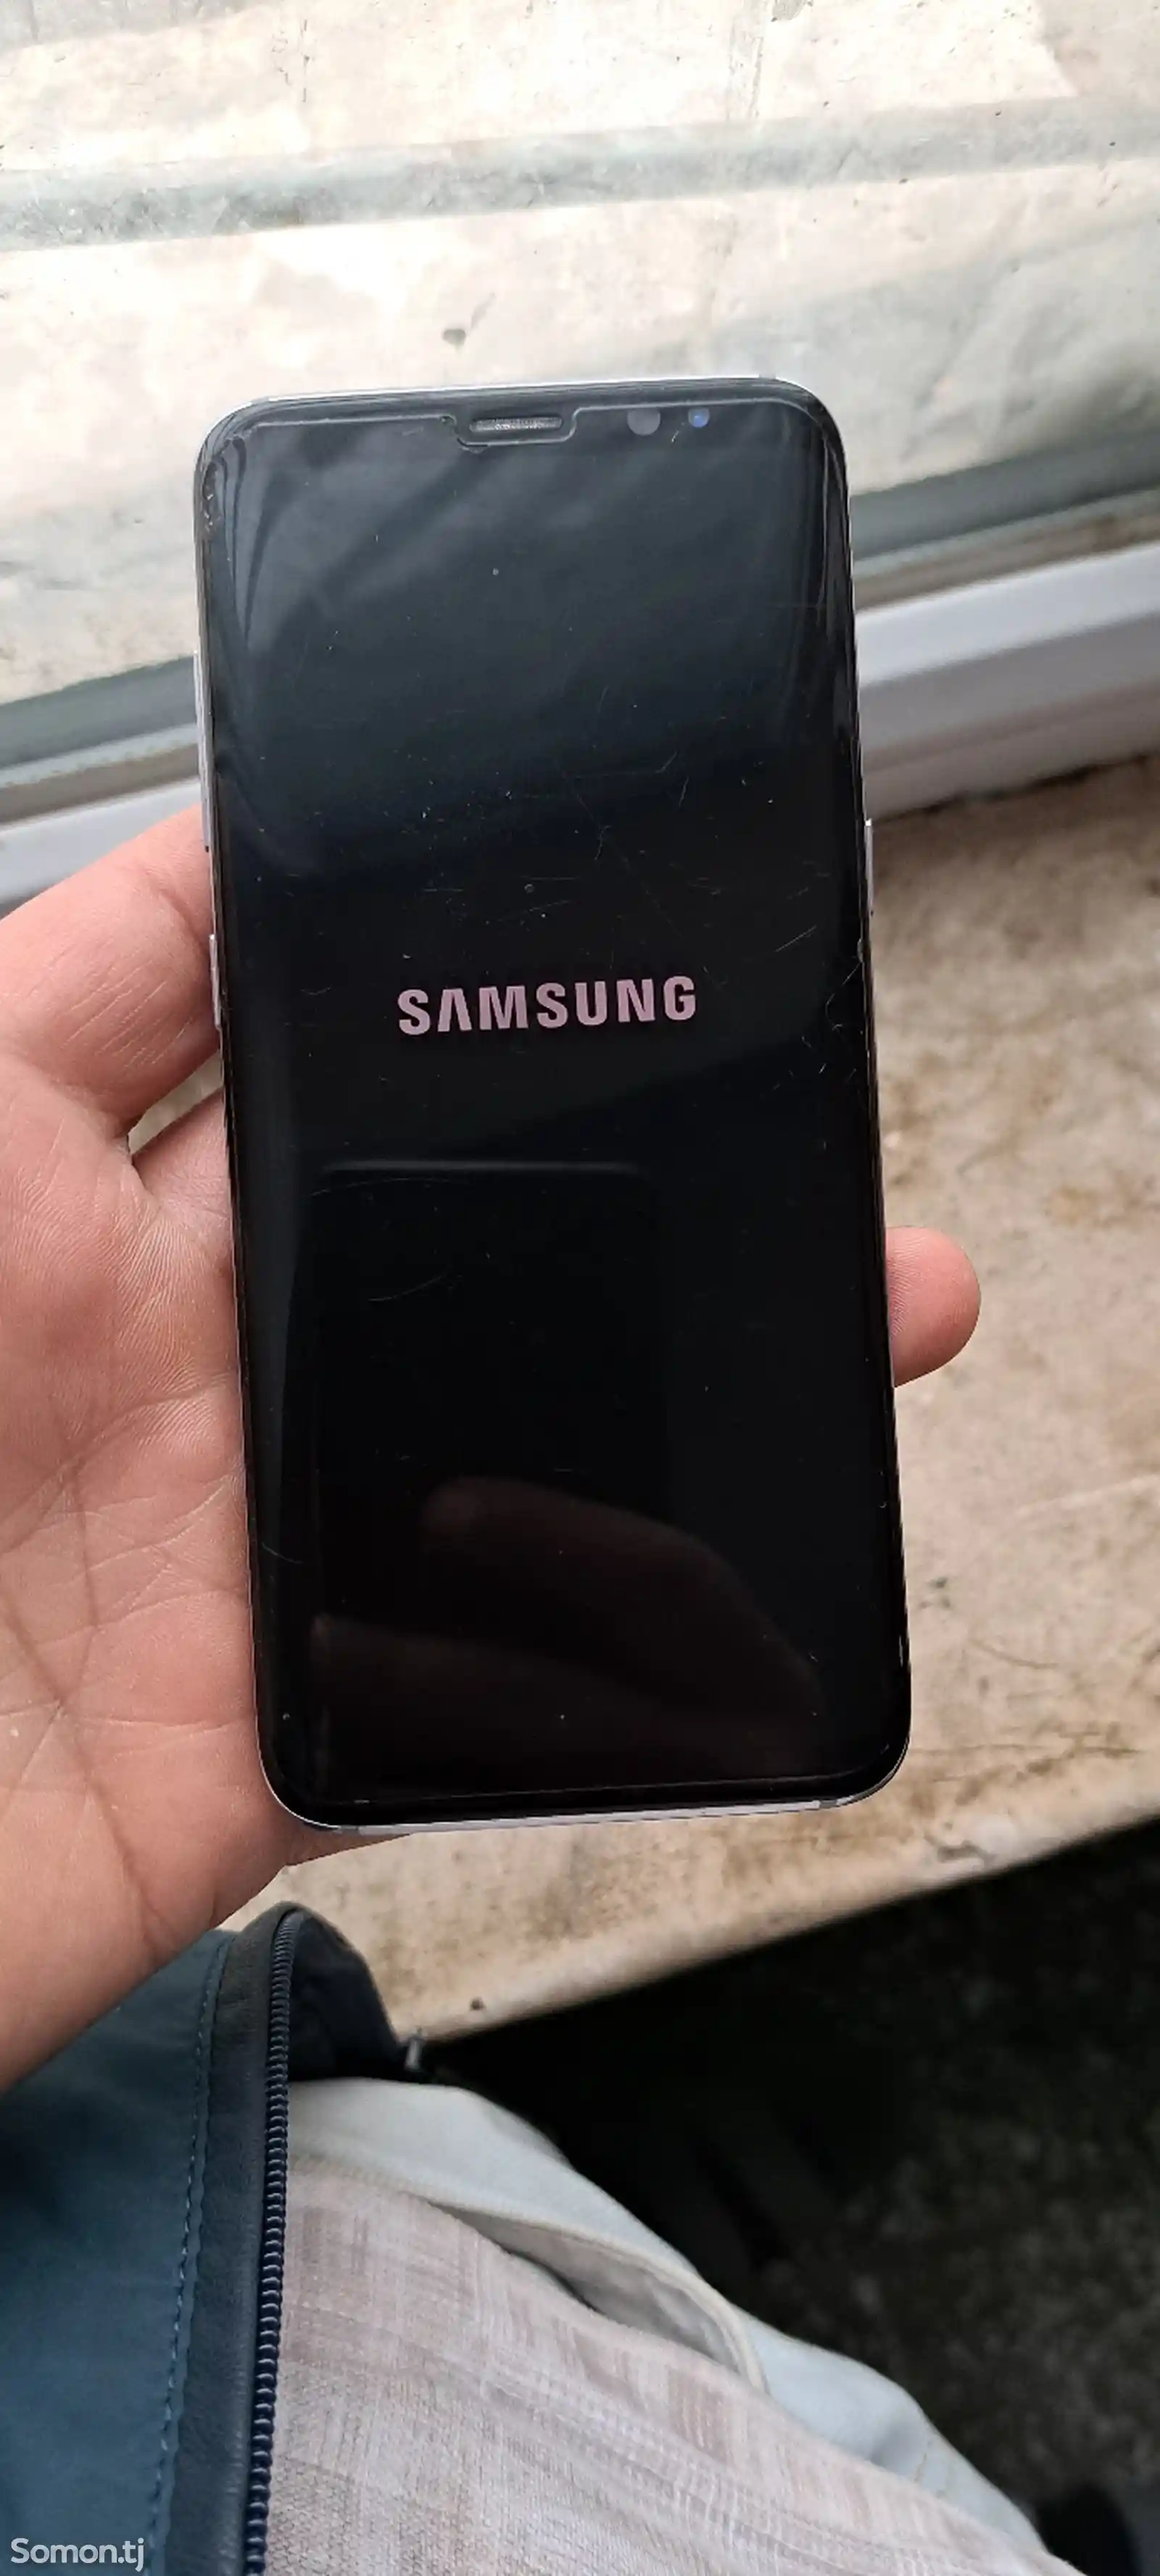 Samsung Galaxy S8-1